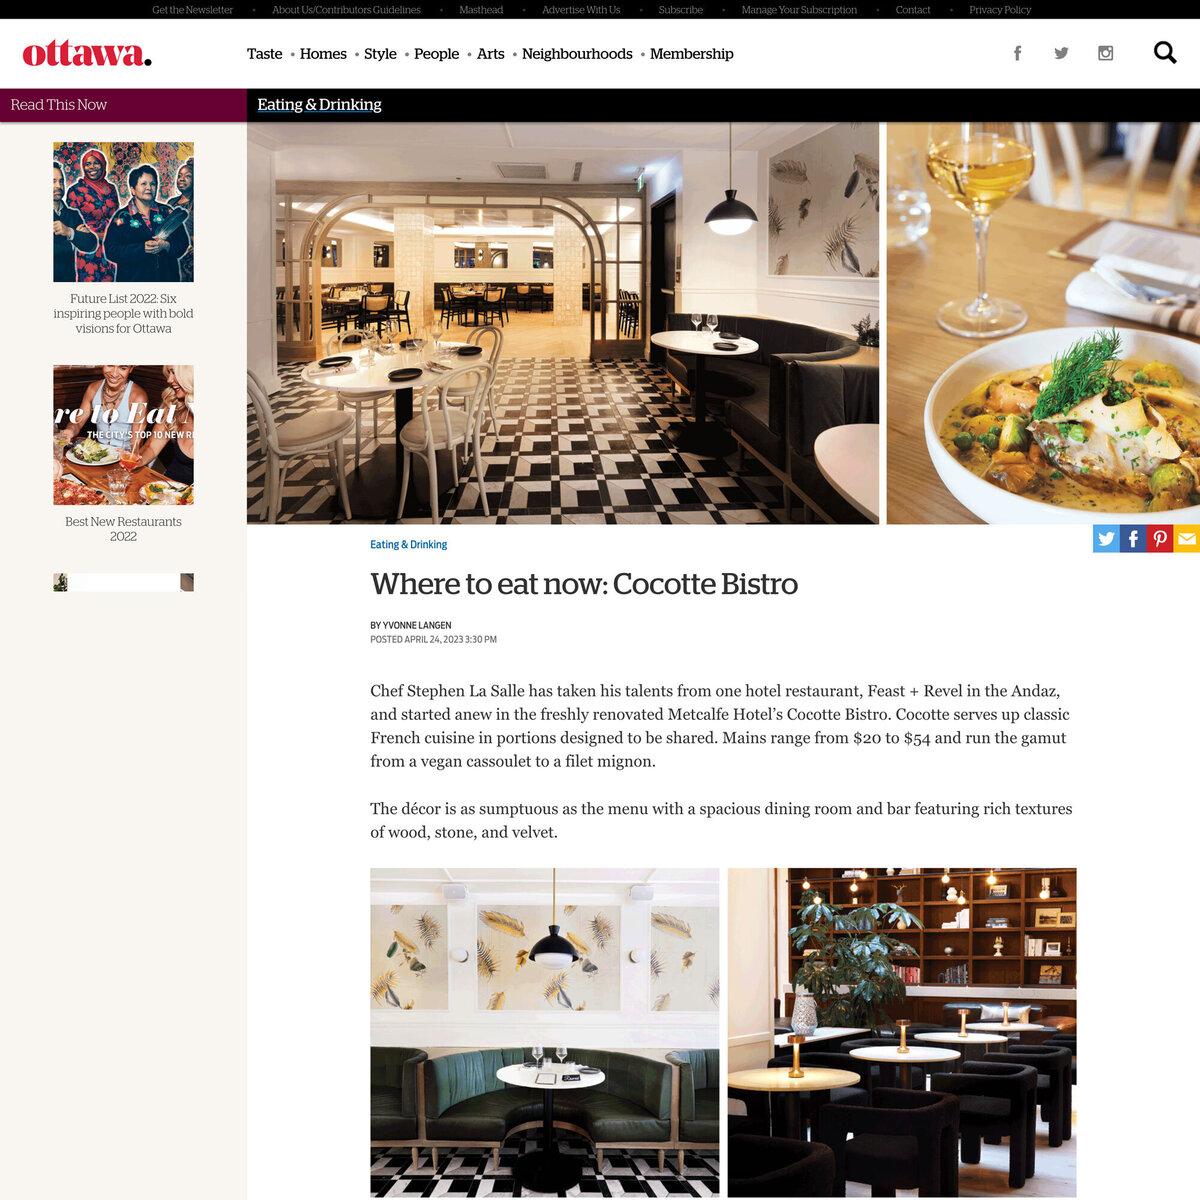 Where-to-eat-now-cocotte-bistro-ottawa-magazine